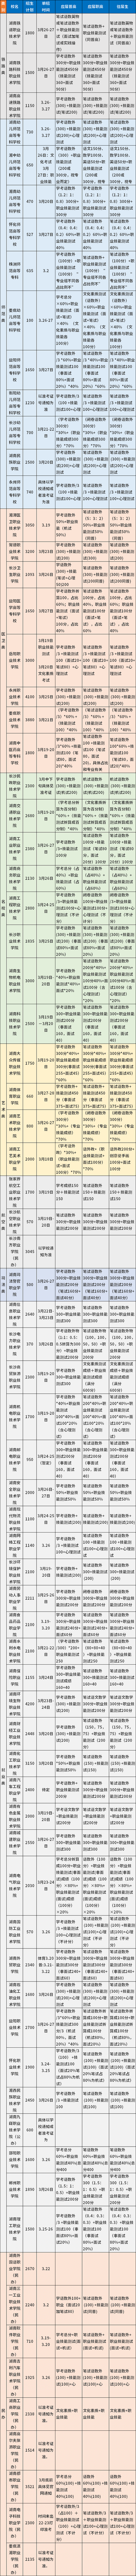 2022年湖南高职单招各院校考试时间及内容汇总